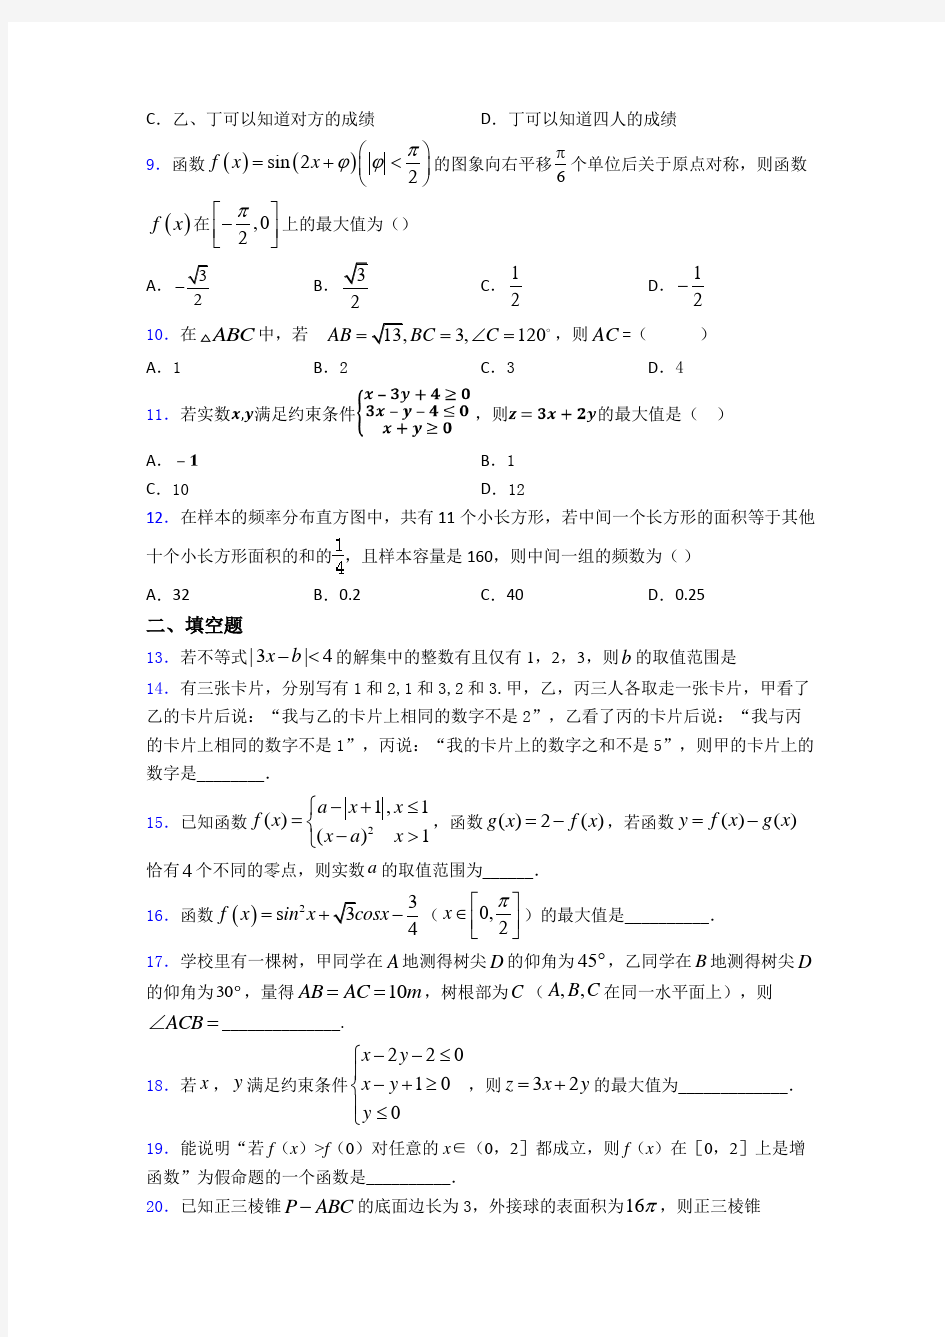 【必考题】高考数学试卷(及答案)